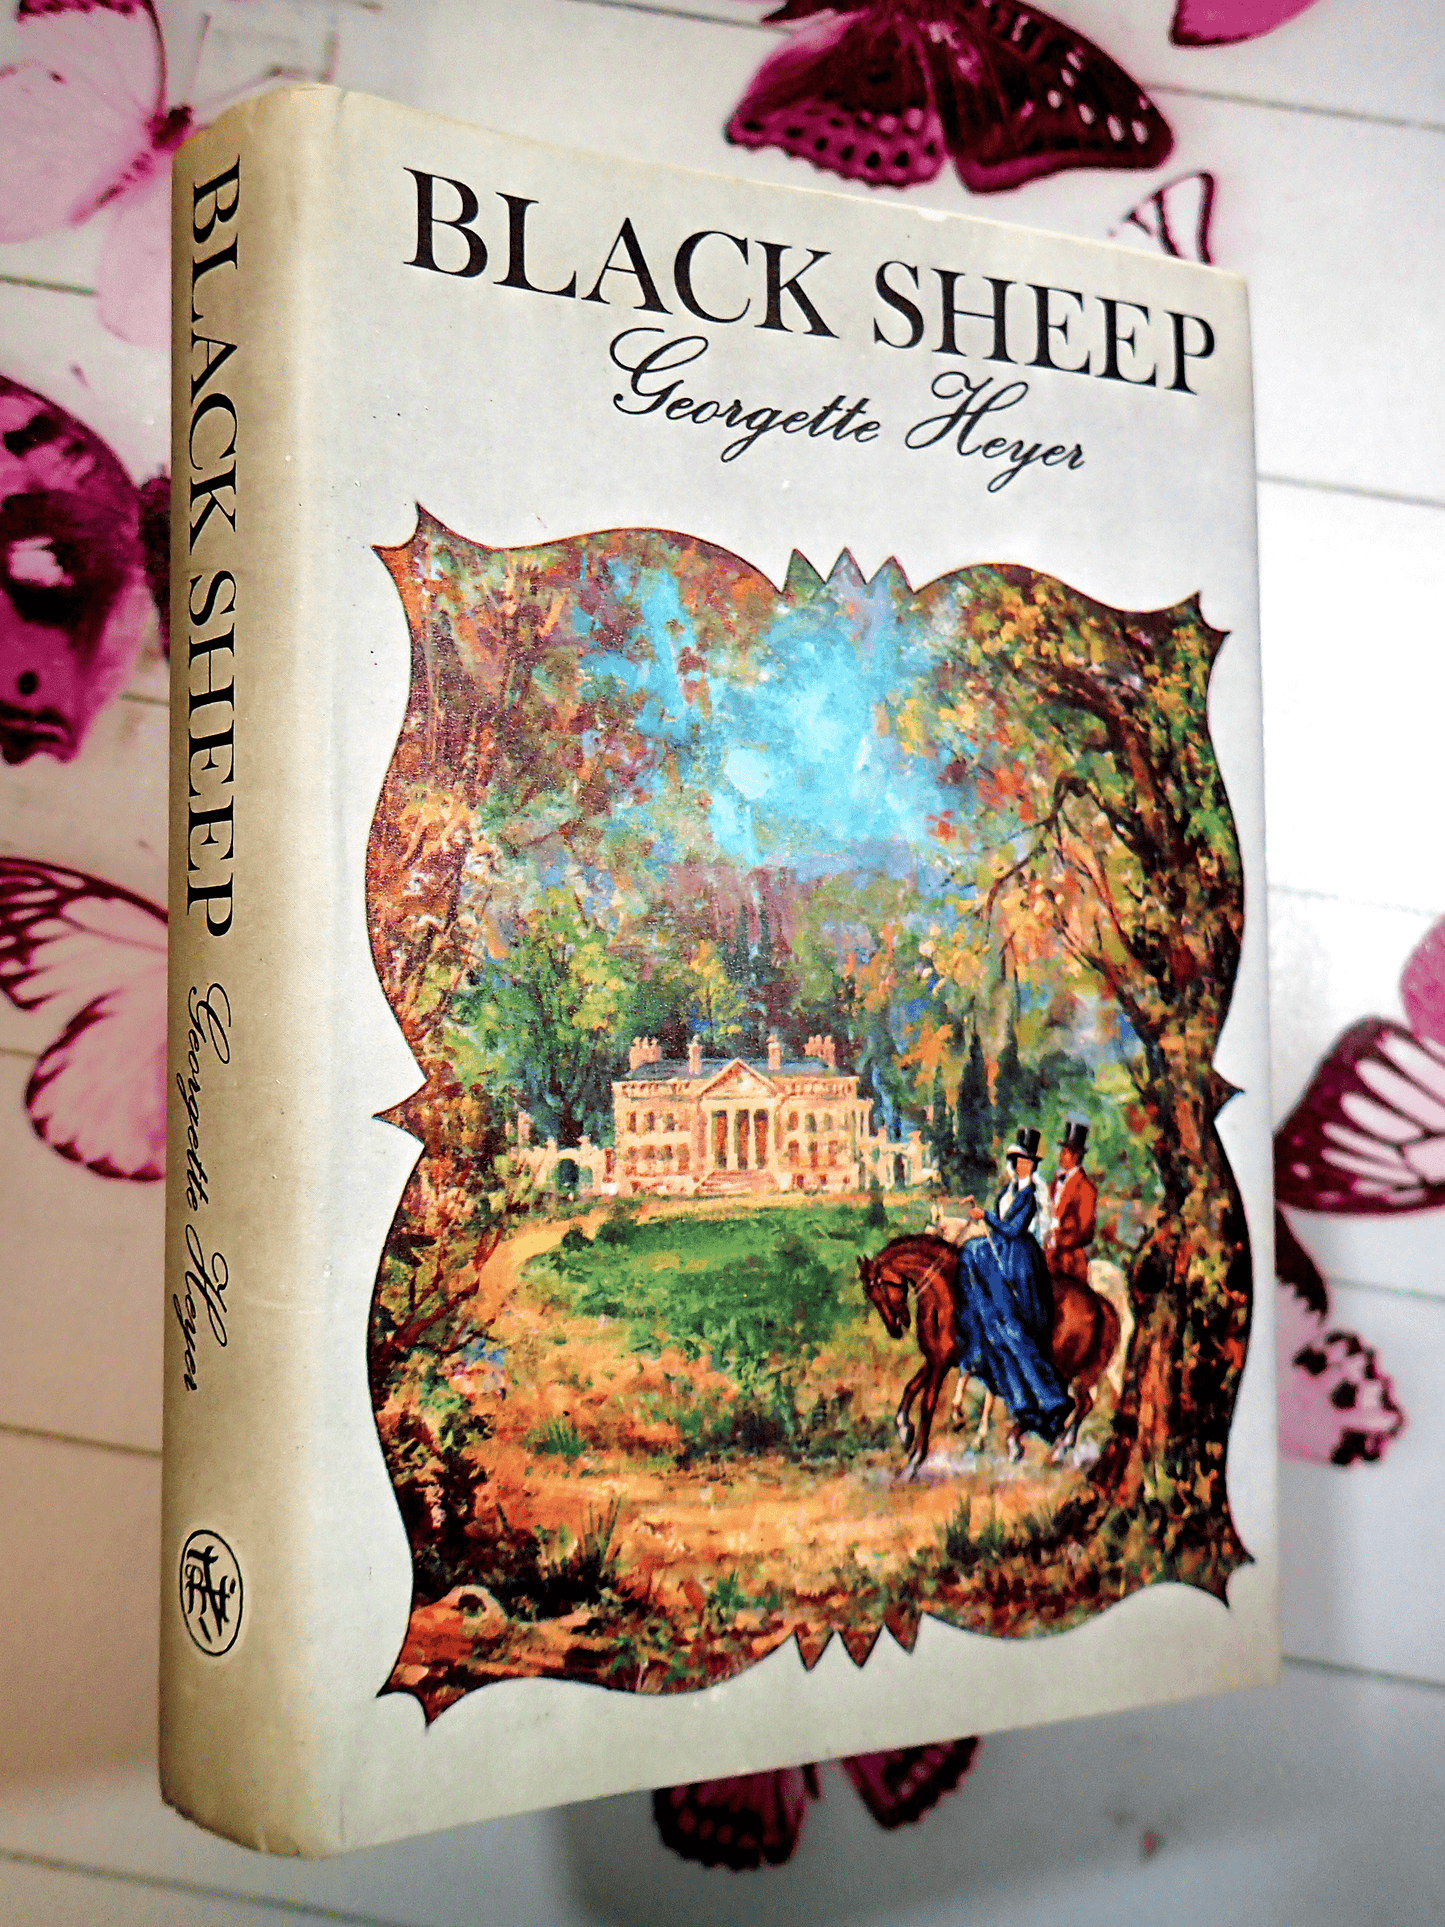 Black Sheep Georgette Heyer Regency Romance Vintage Book Bath